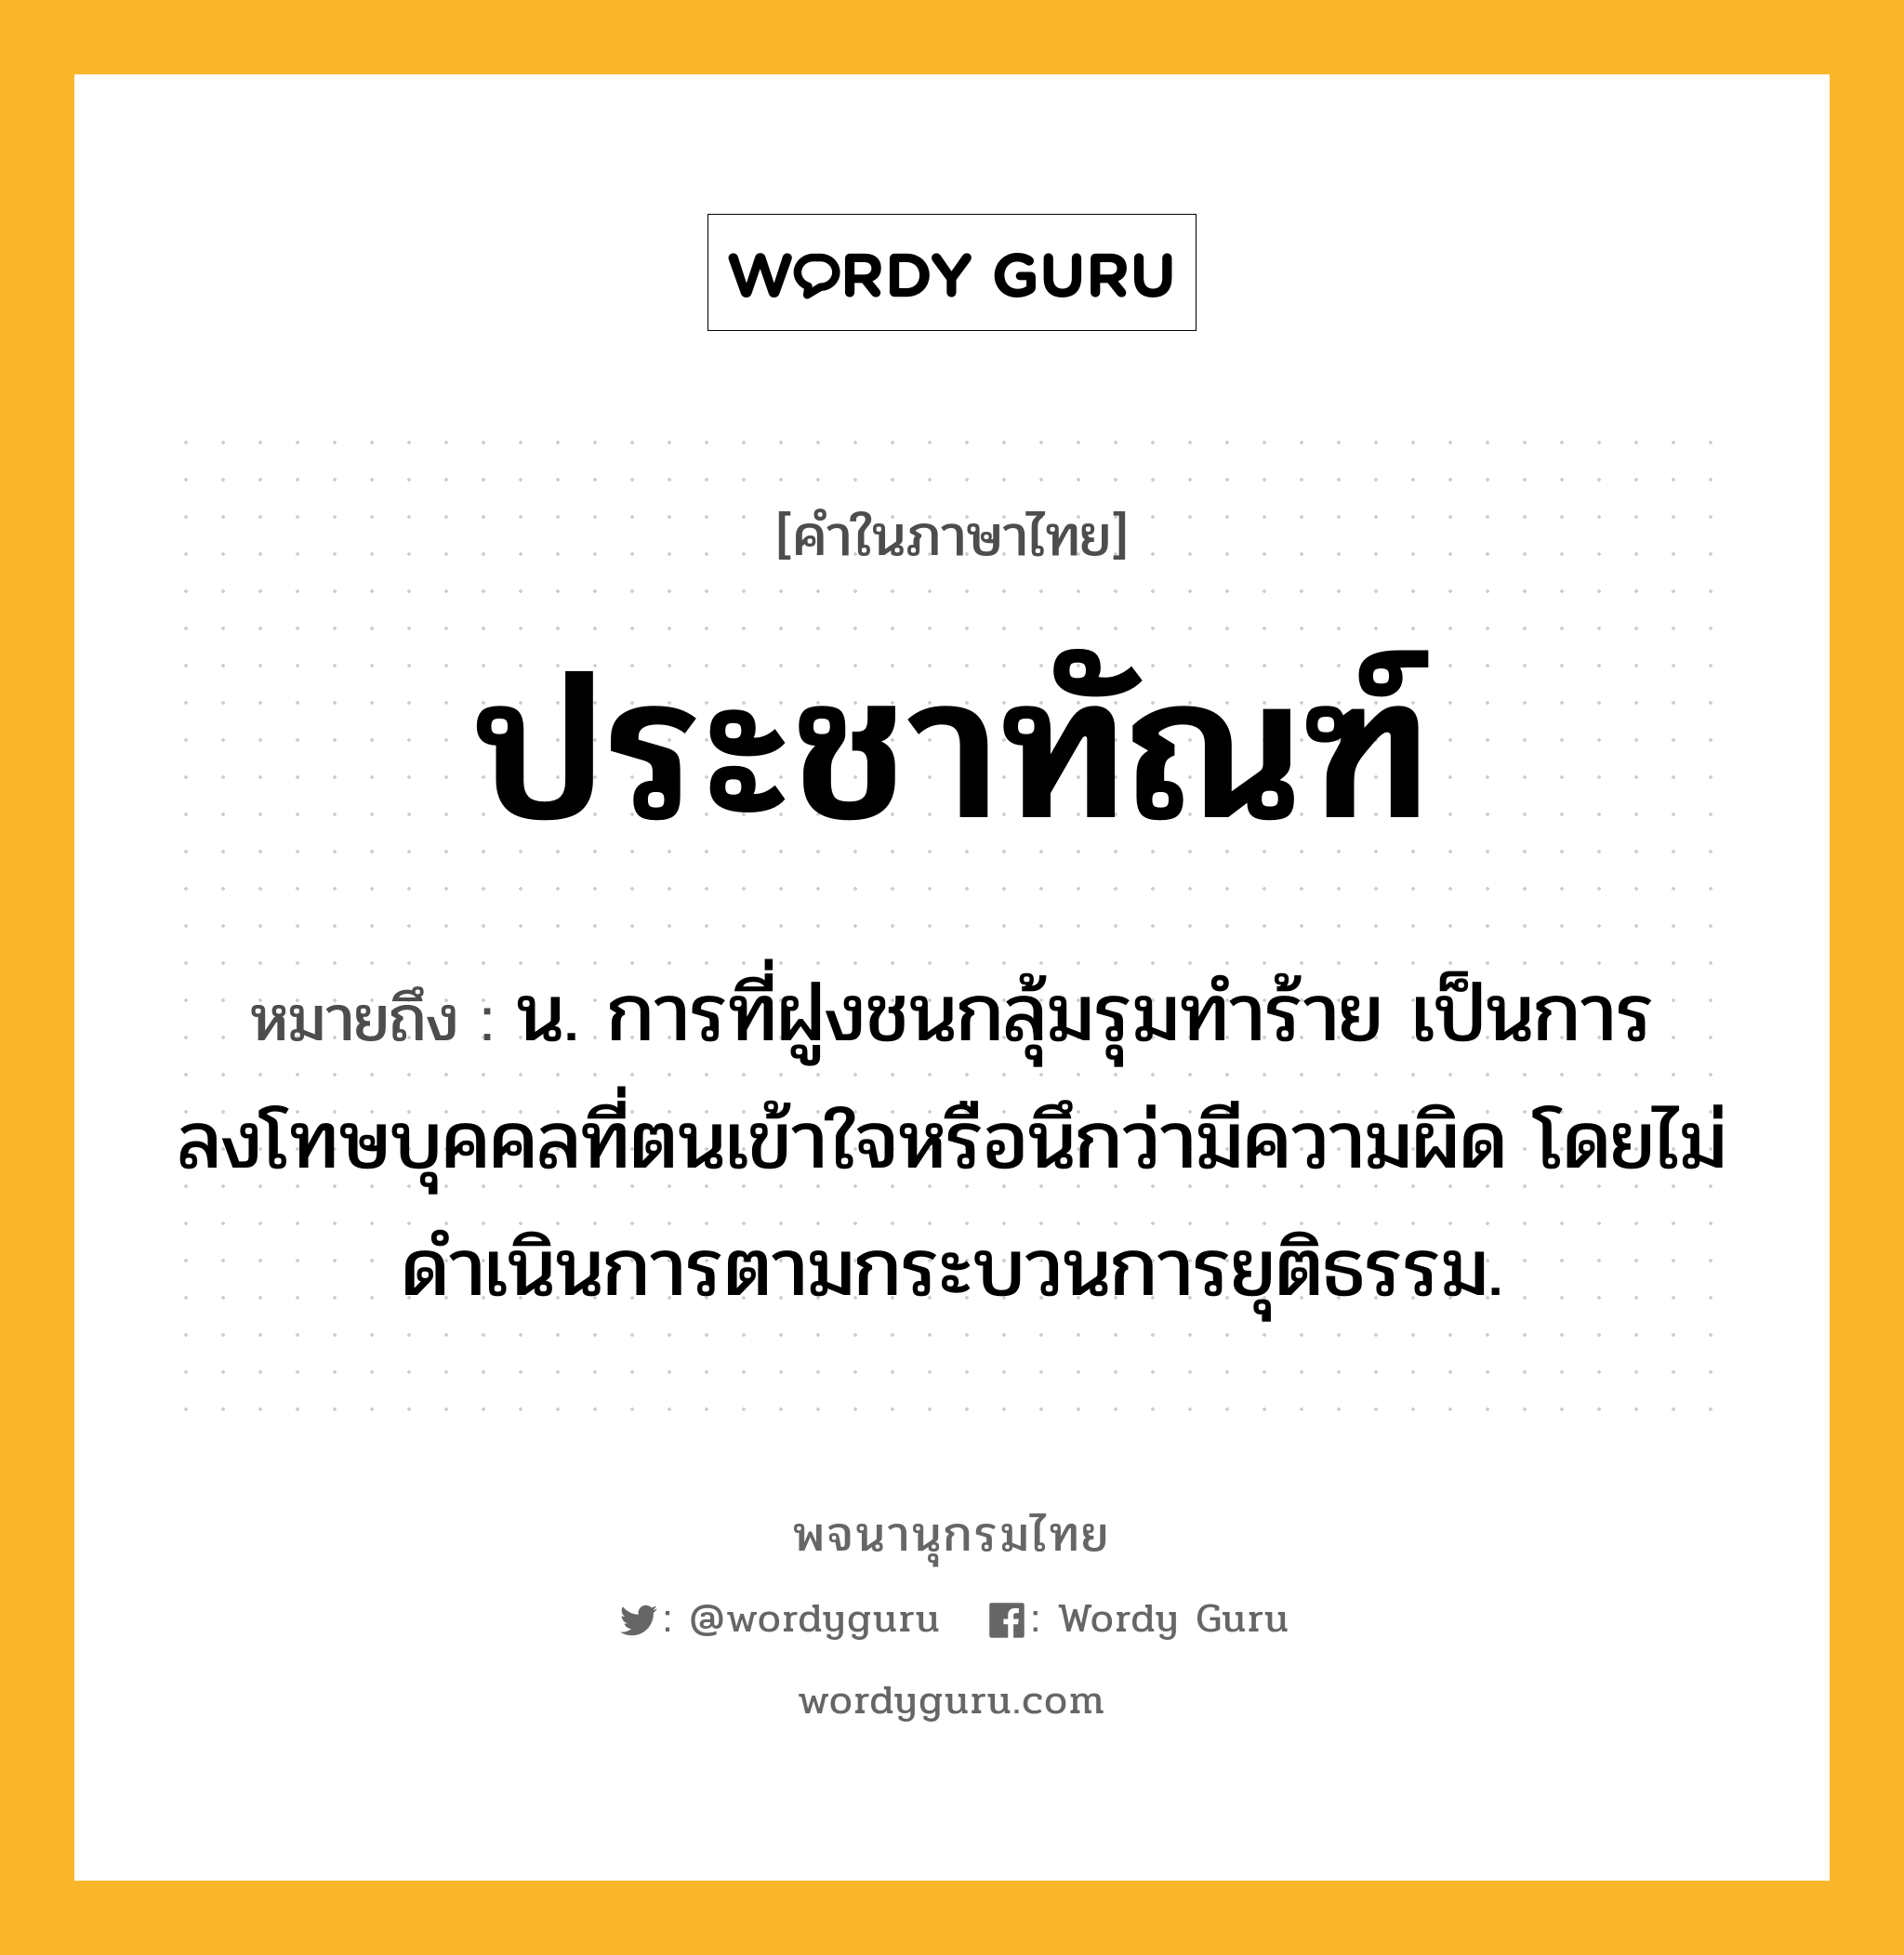 ประชาทัณฑ์ หมายถึงอะไร?, คำในภาษาไทย ประชาทัณฑ์ หมายถึง น. การที่ฝูงชนกลุ้มรุมทําร้าย เป็นการลงโทษบุคคลที่ตนเข้าใจหรือนึกว่ามีความผิด โดยไม่ดําเนินการตามกระบวนการยุติธรรม.